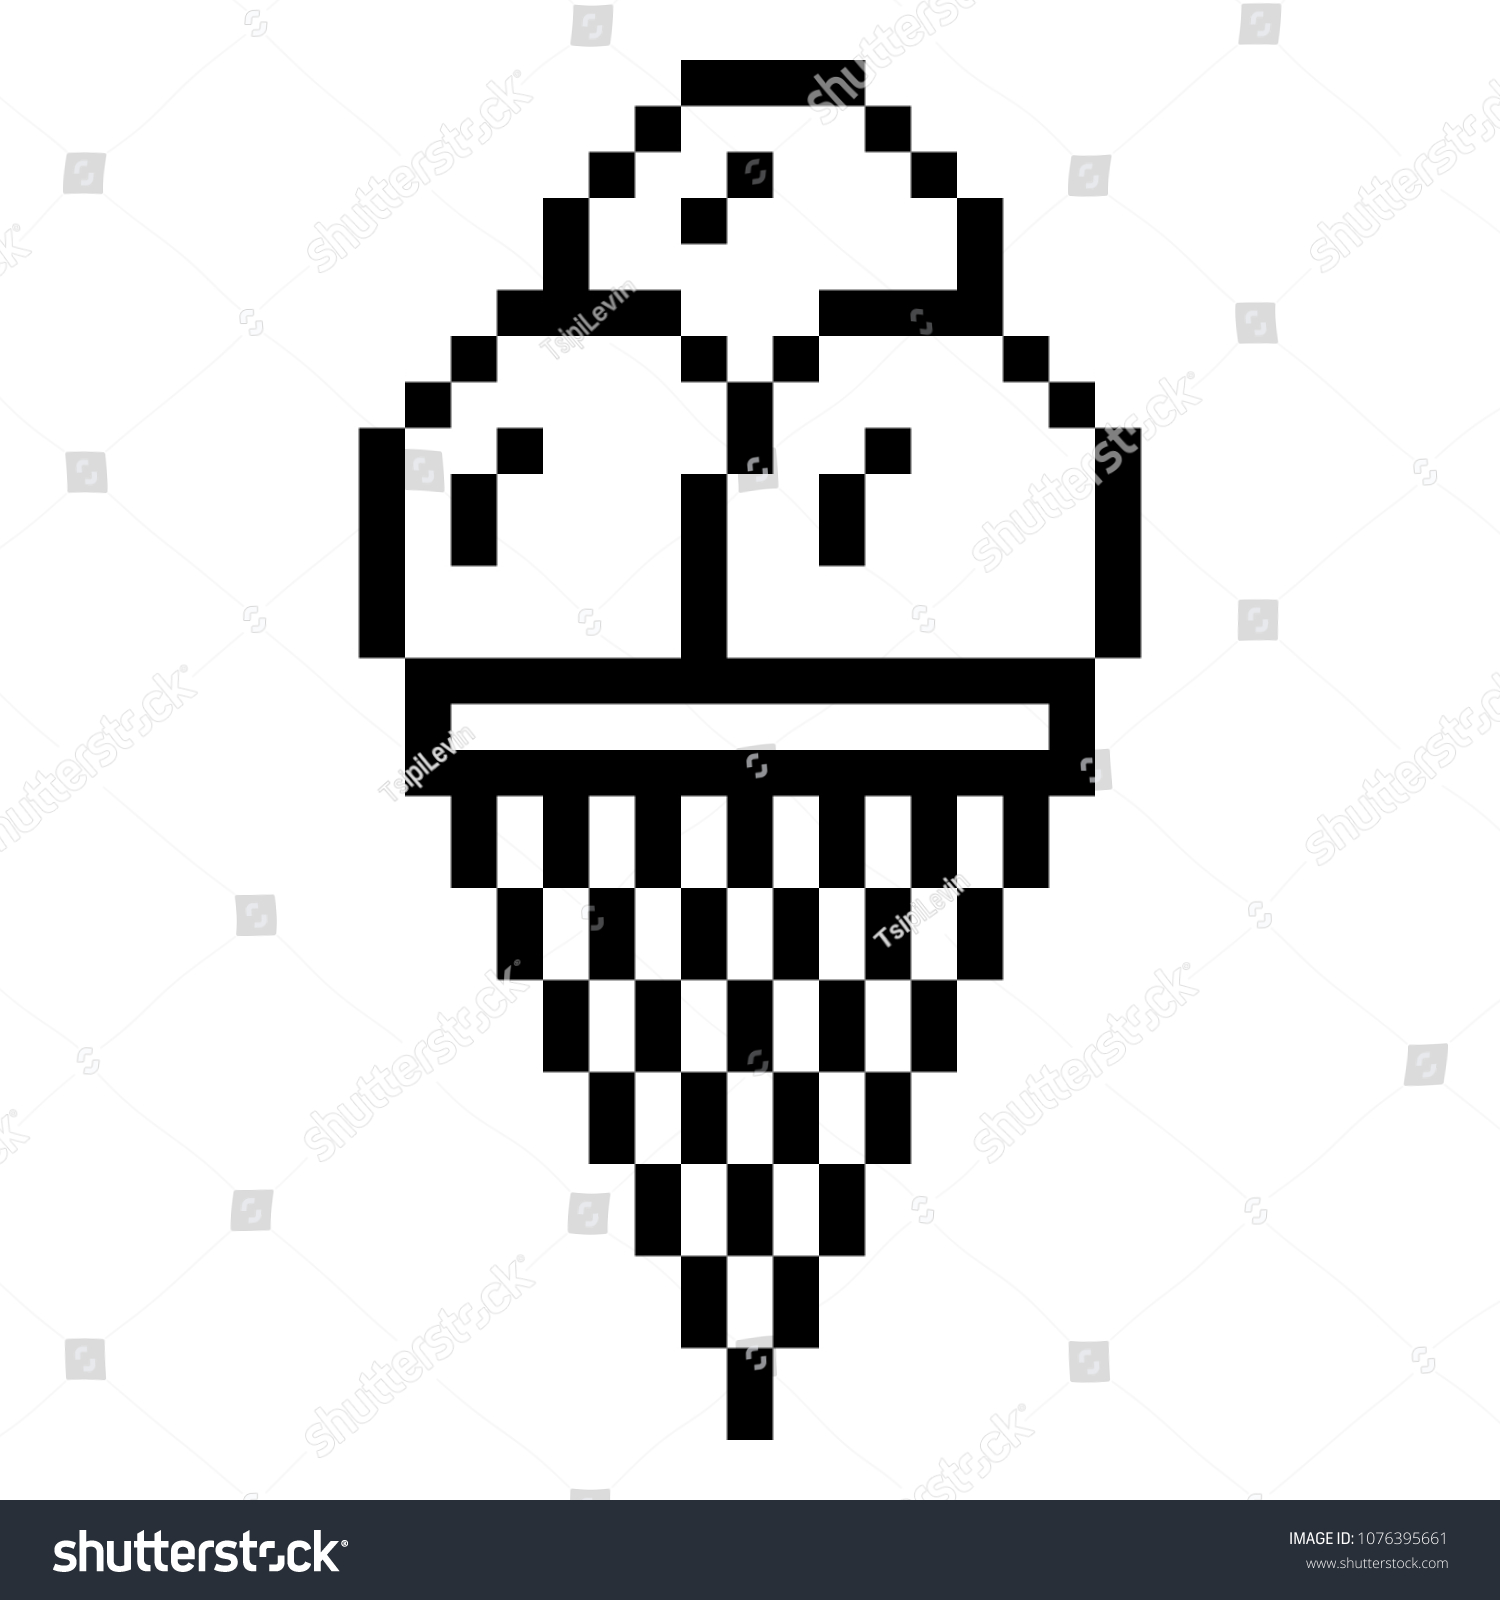 Мороженое из пикселей